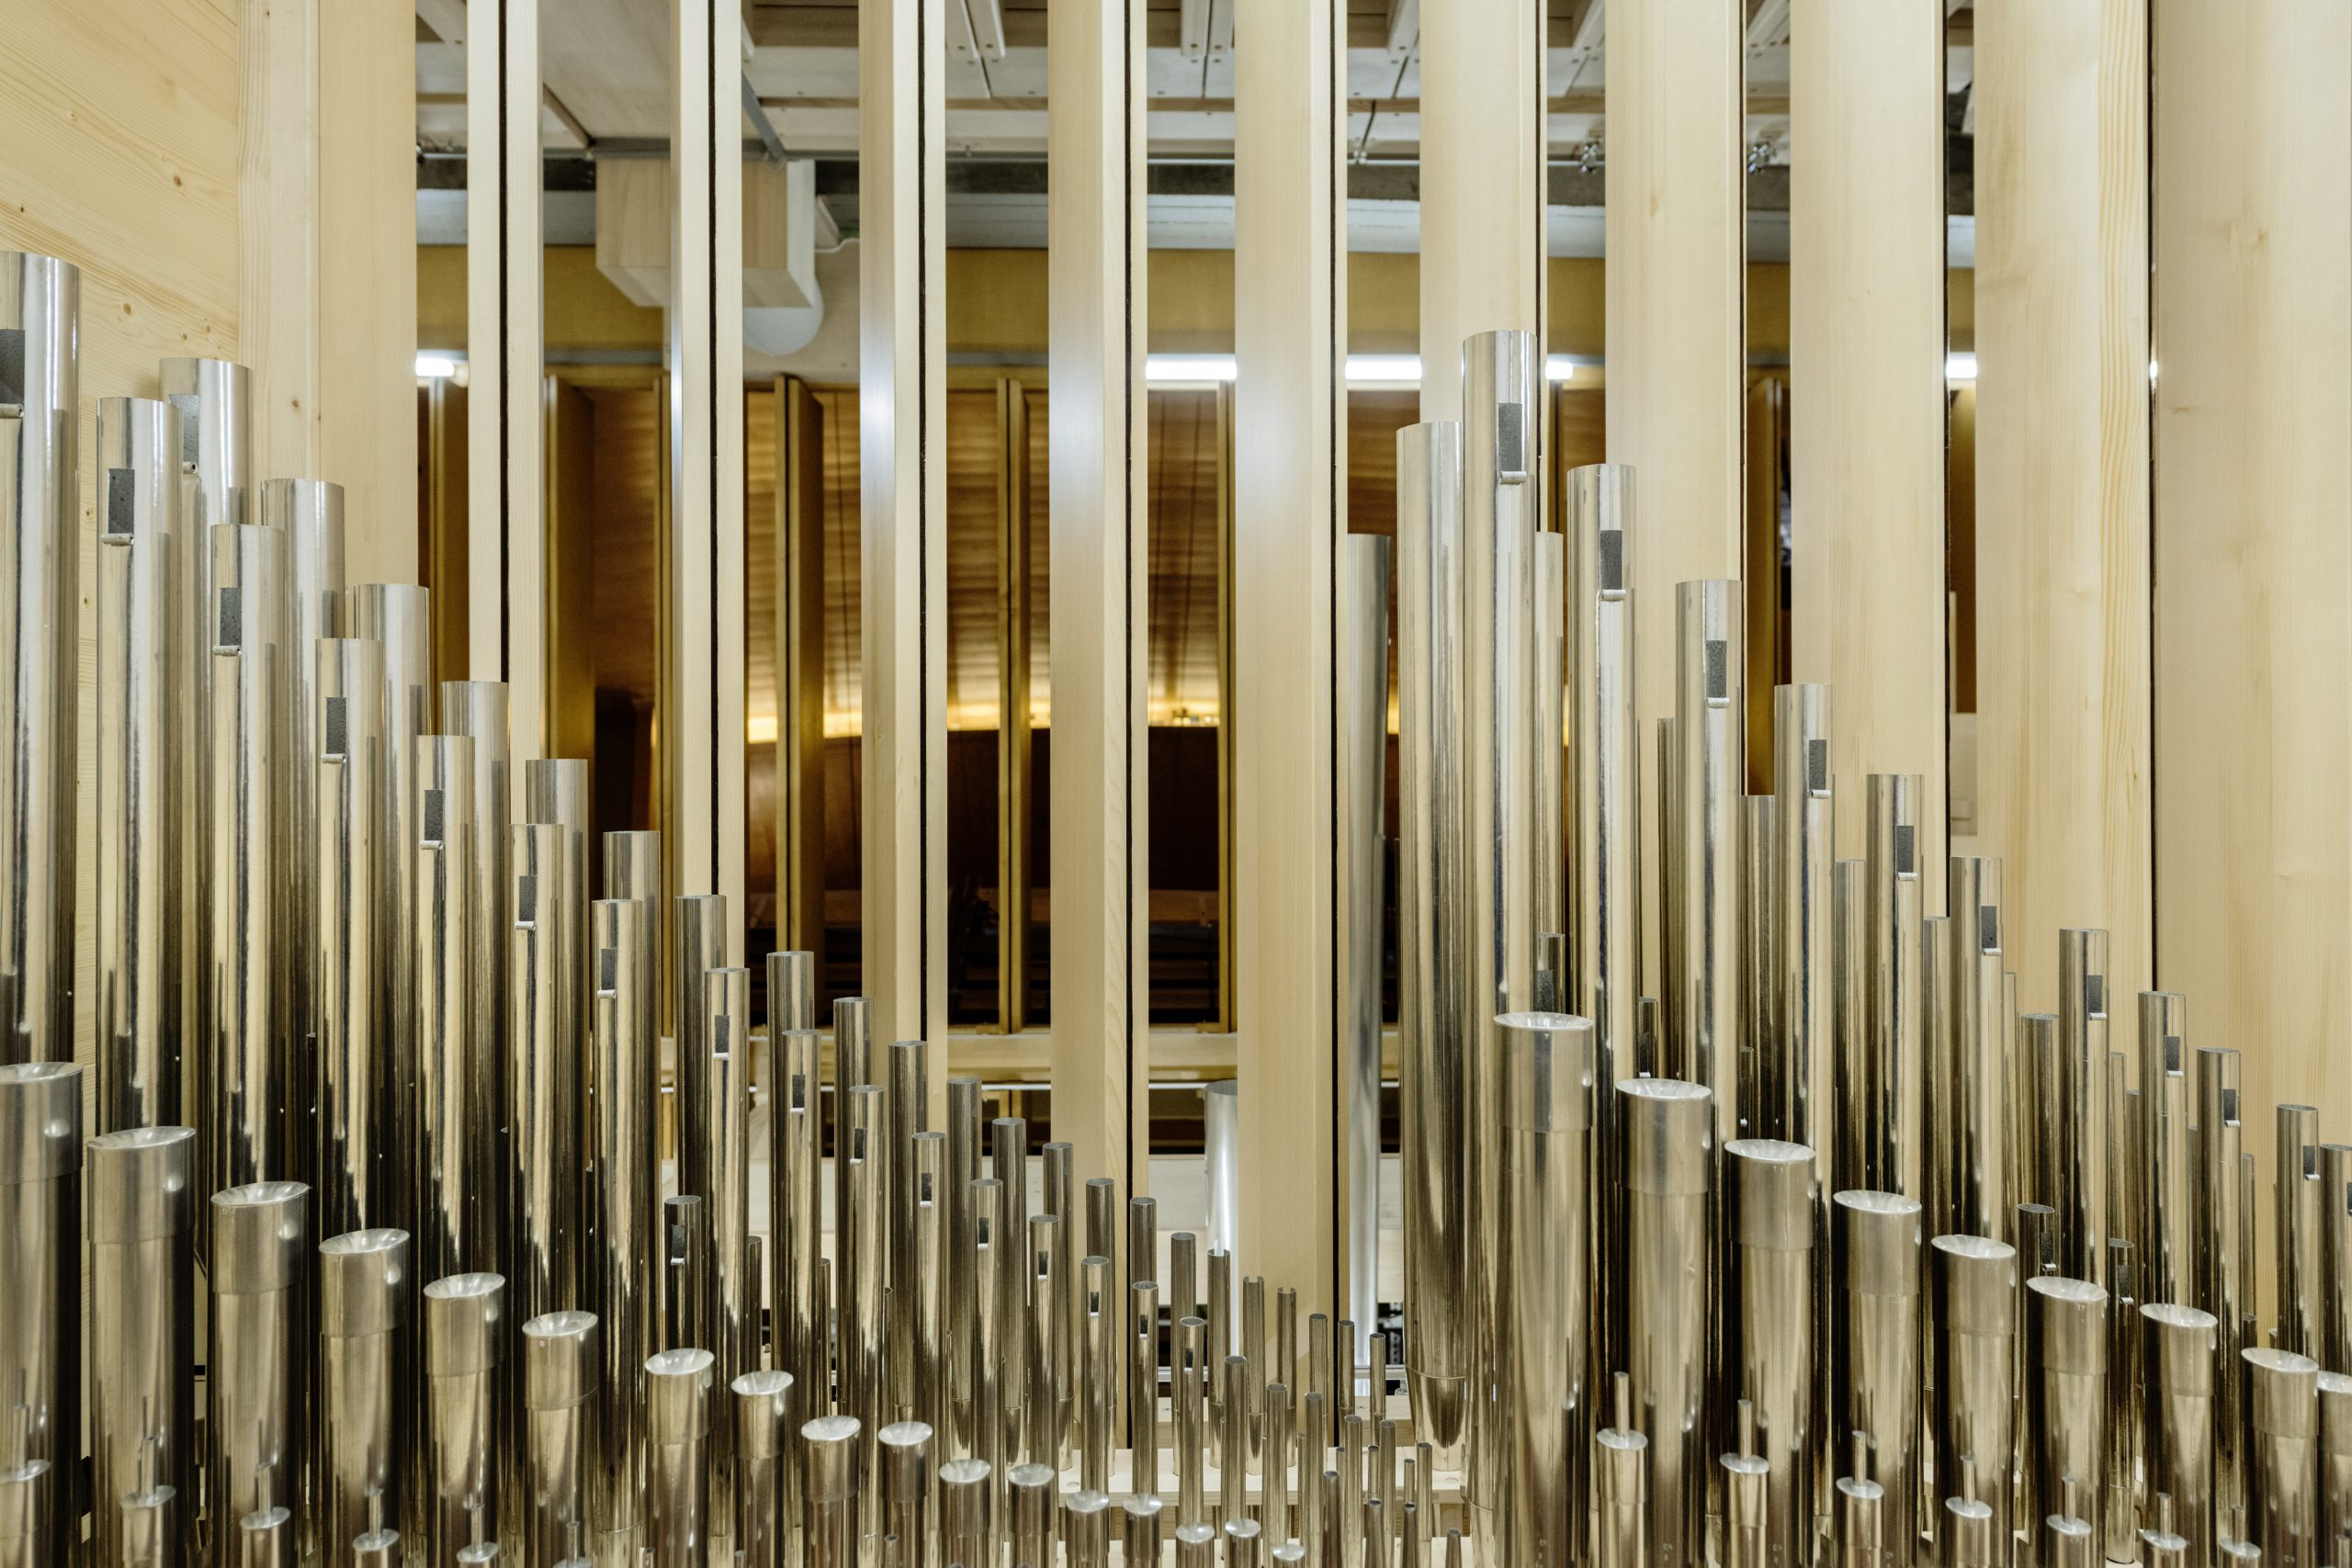 Närbild på pipor i en orgel.